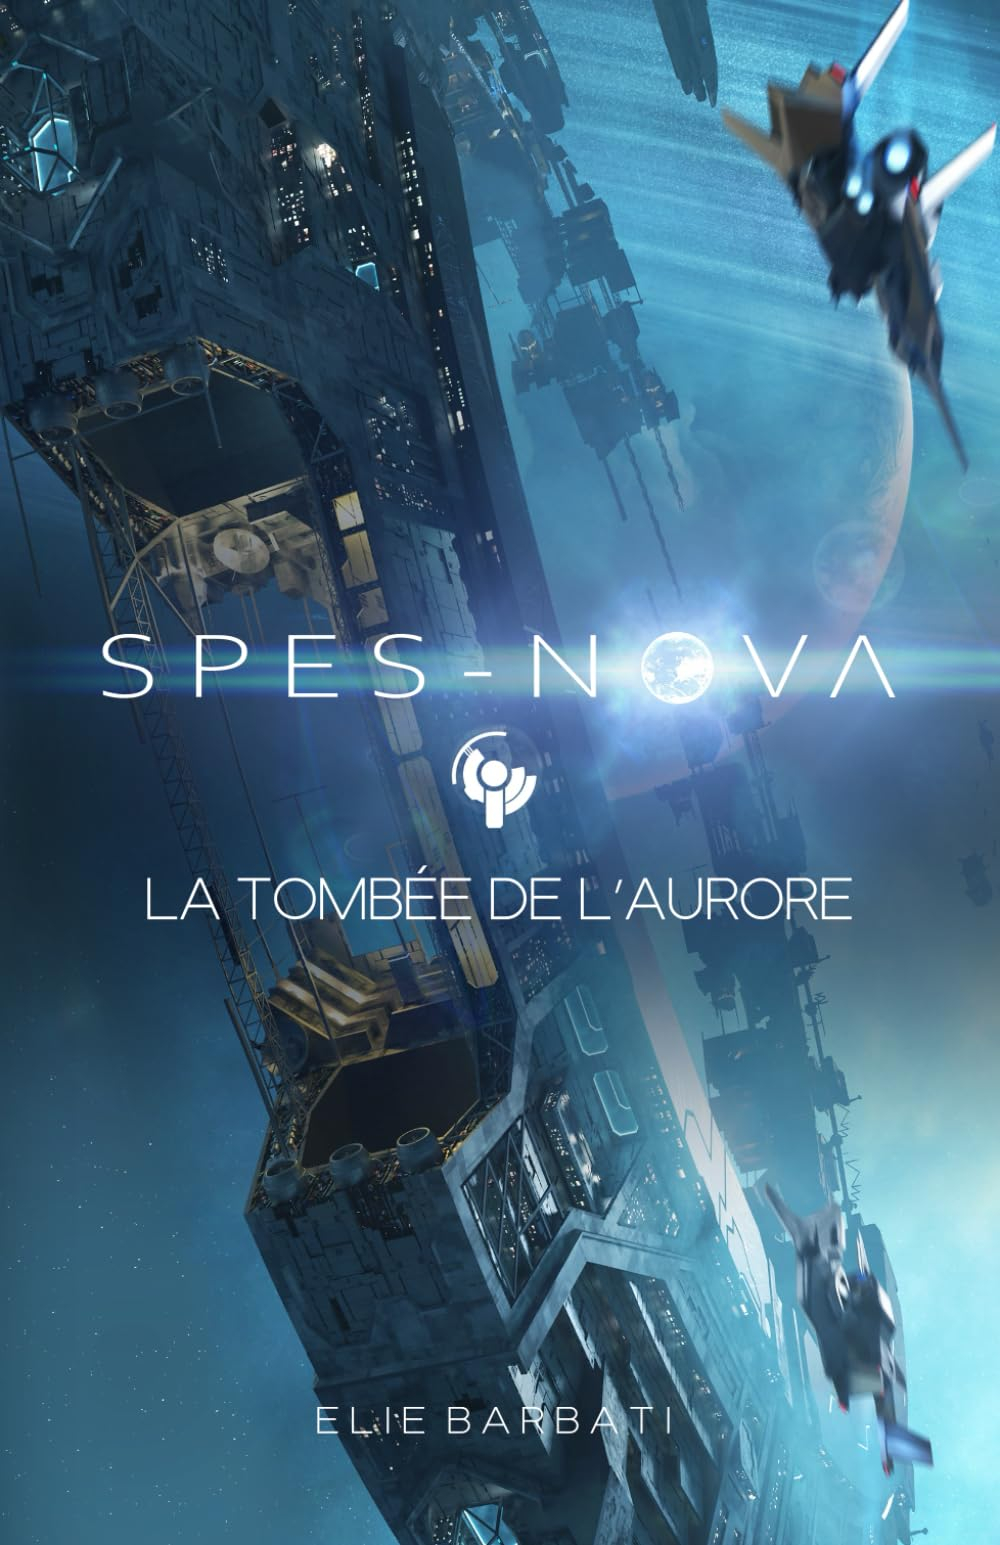 Spes-Nova: La tombée de l'Aurore